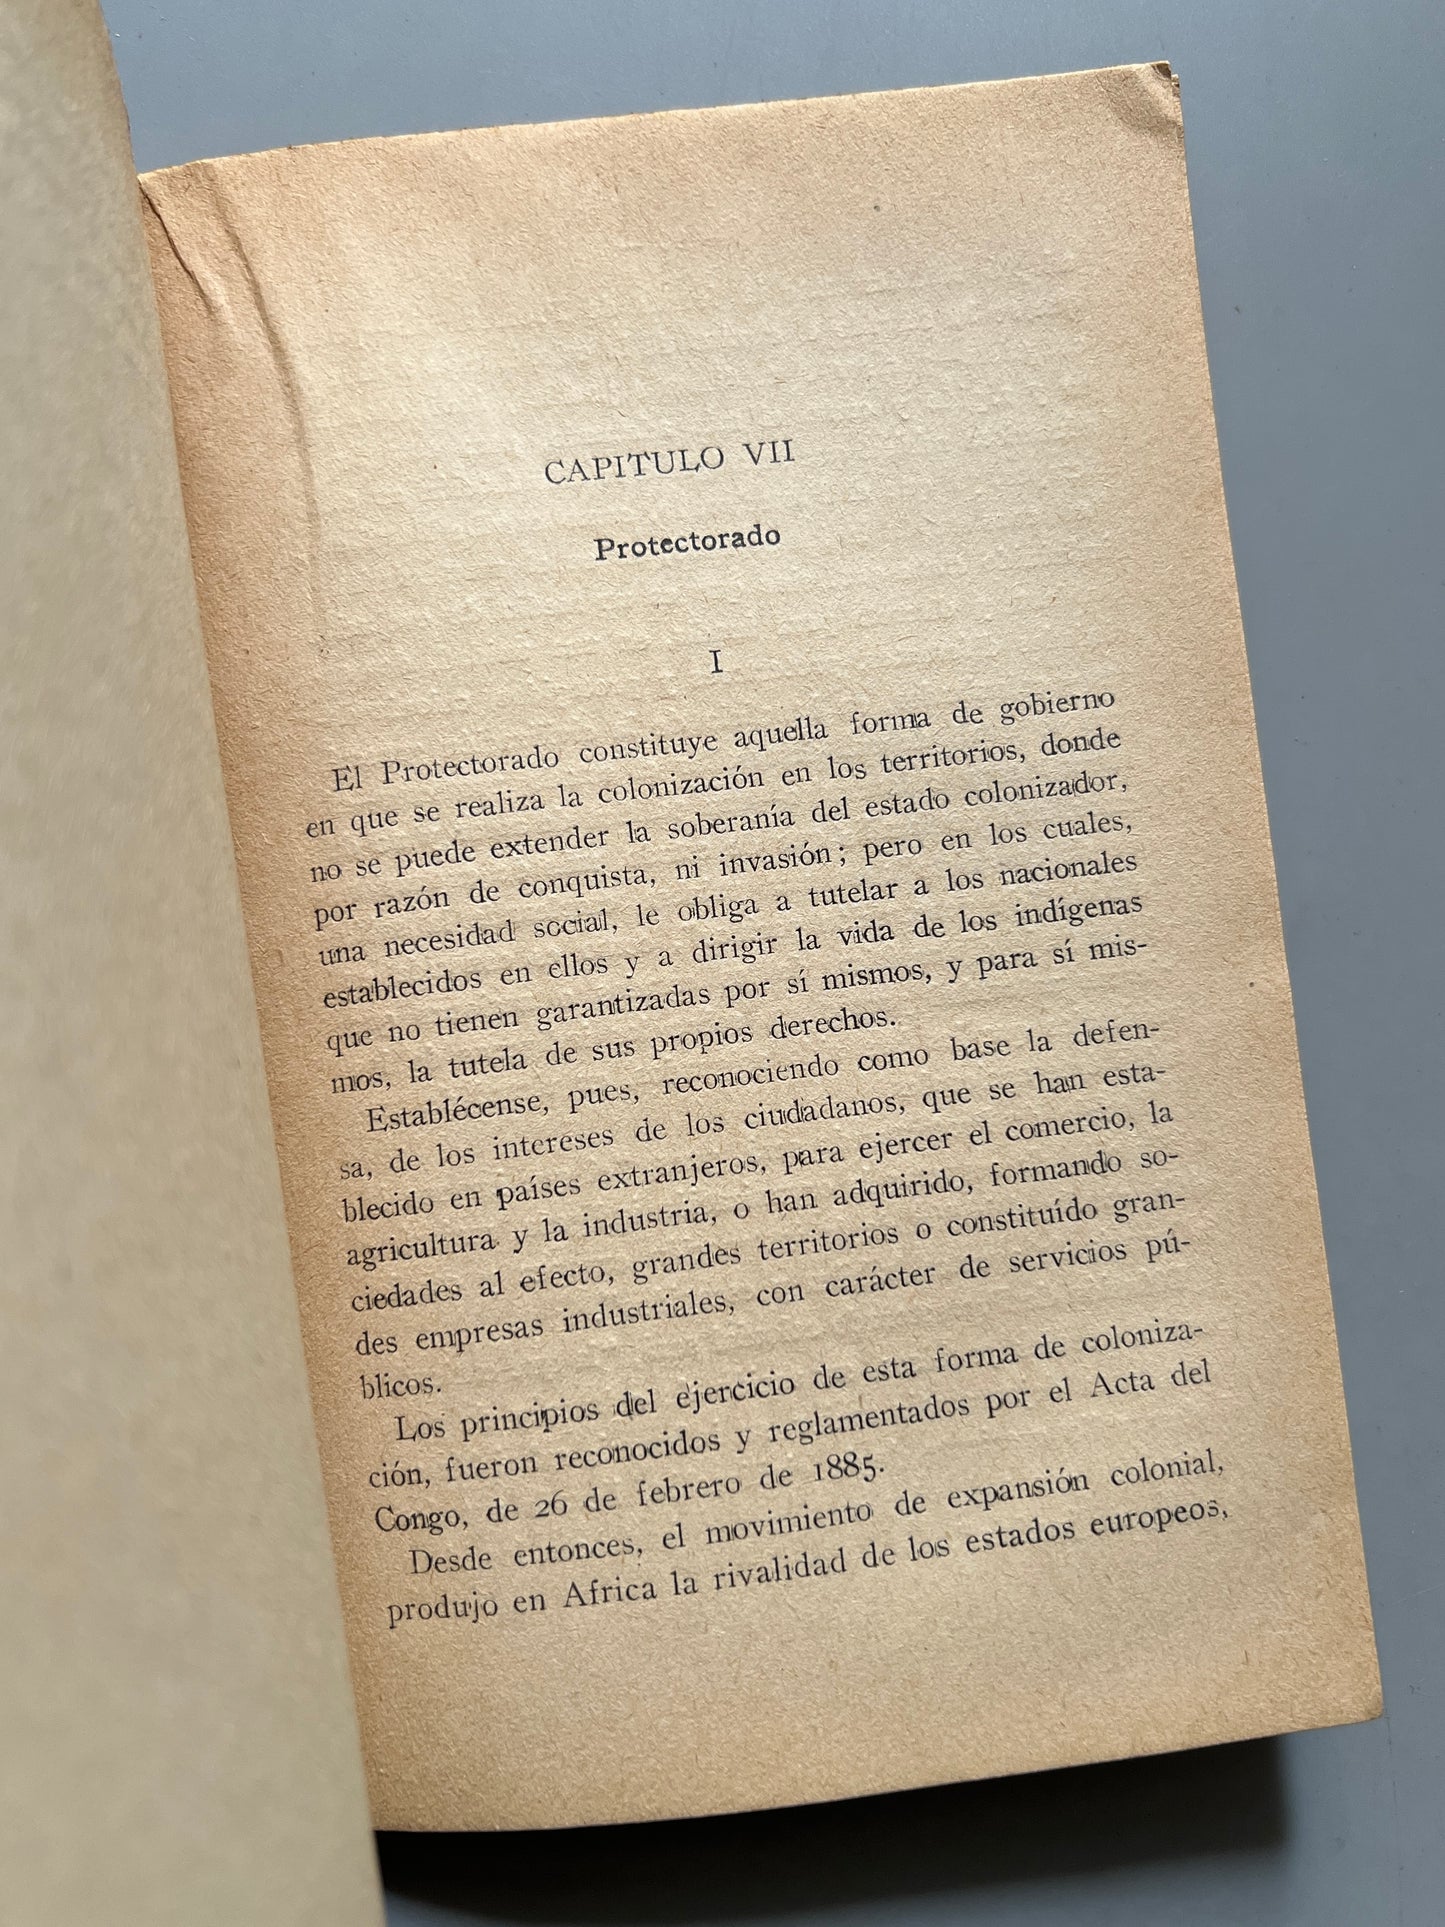 Marruecos en 1930, E. González-Jiménez - Imprenta del Colegio de Huérfanos de María Cristina, 1931